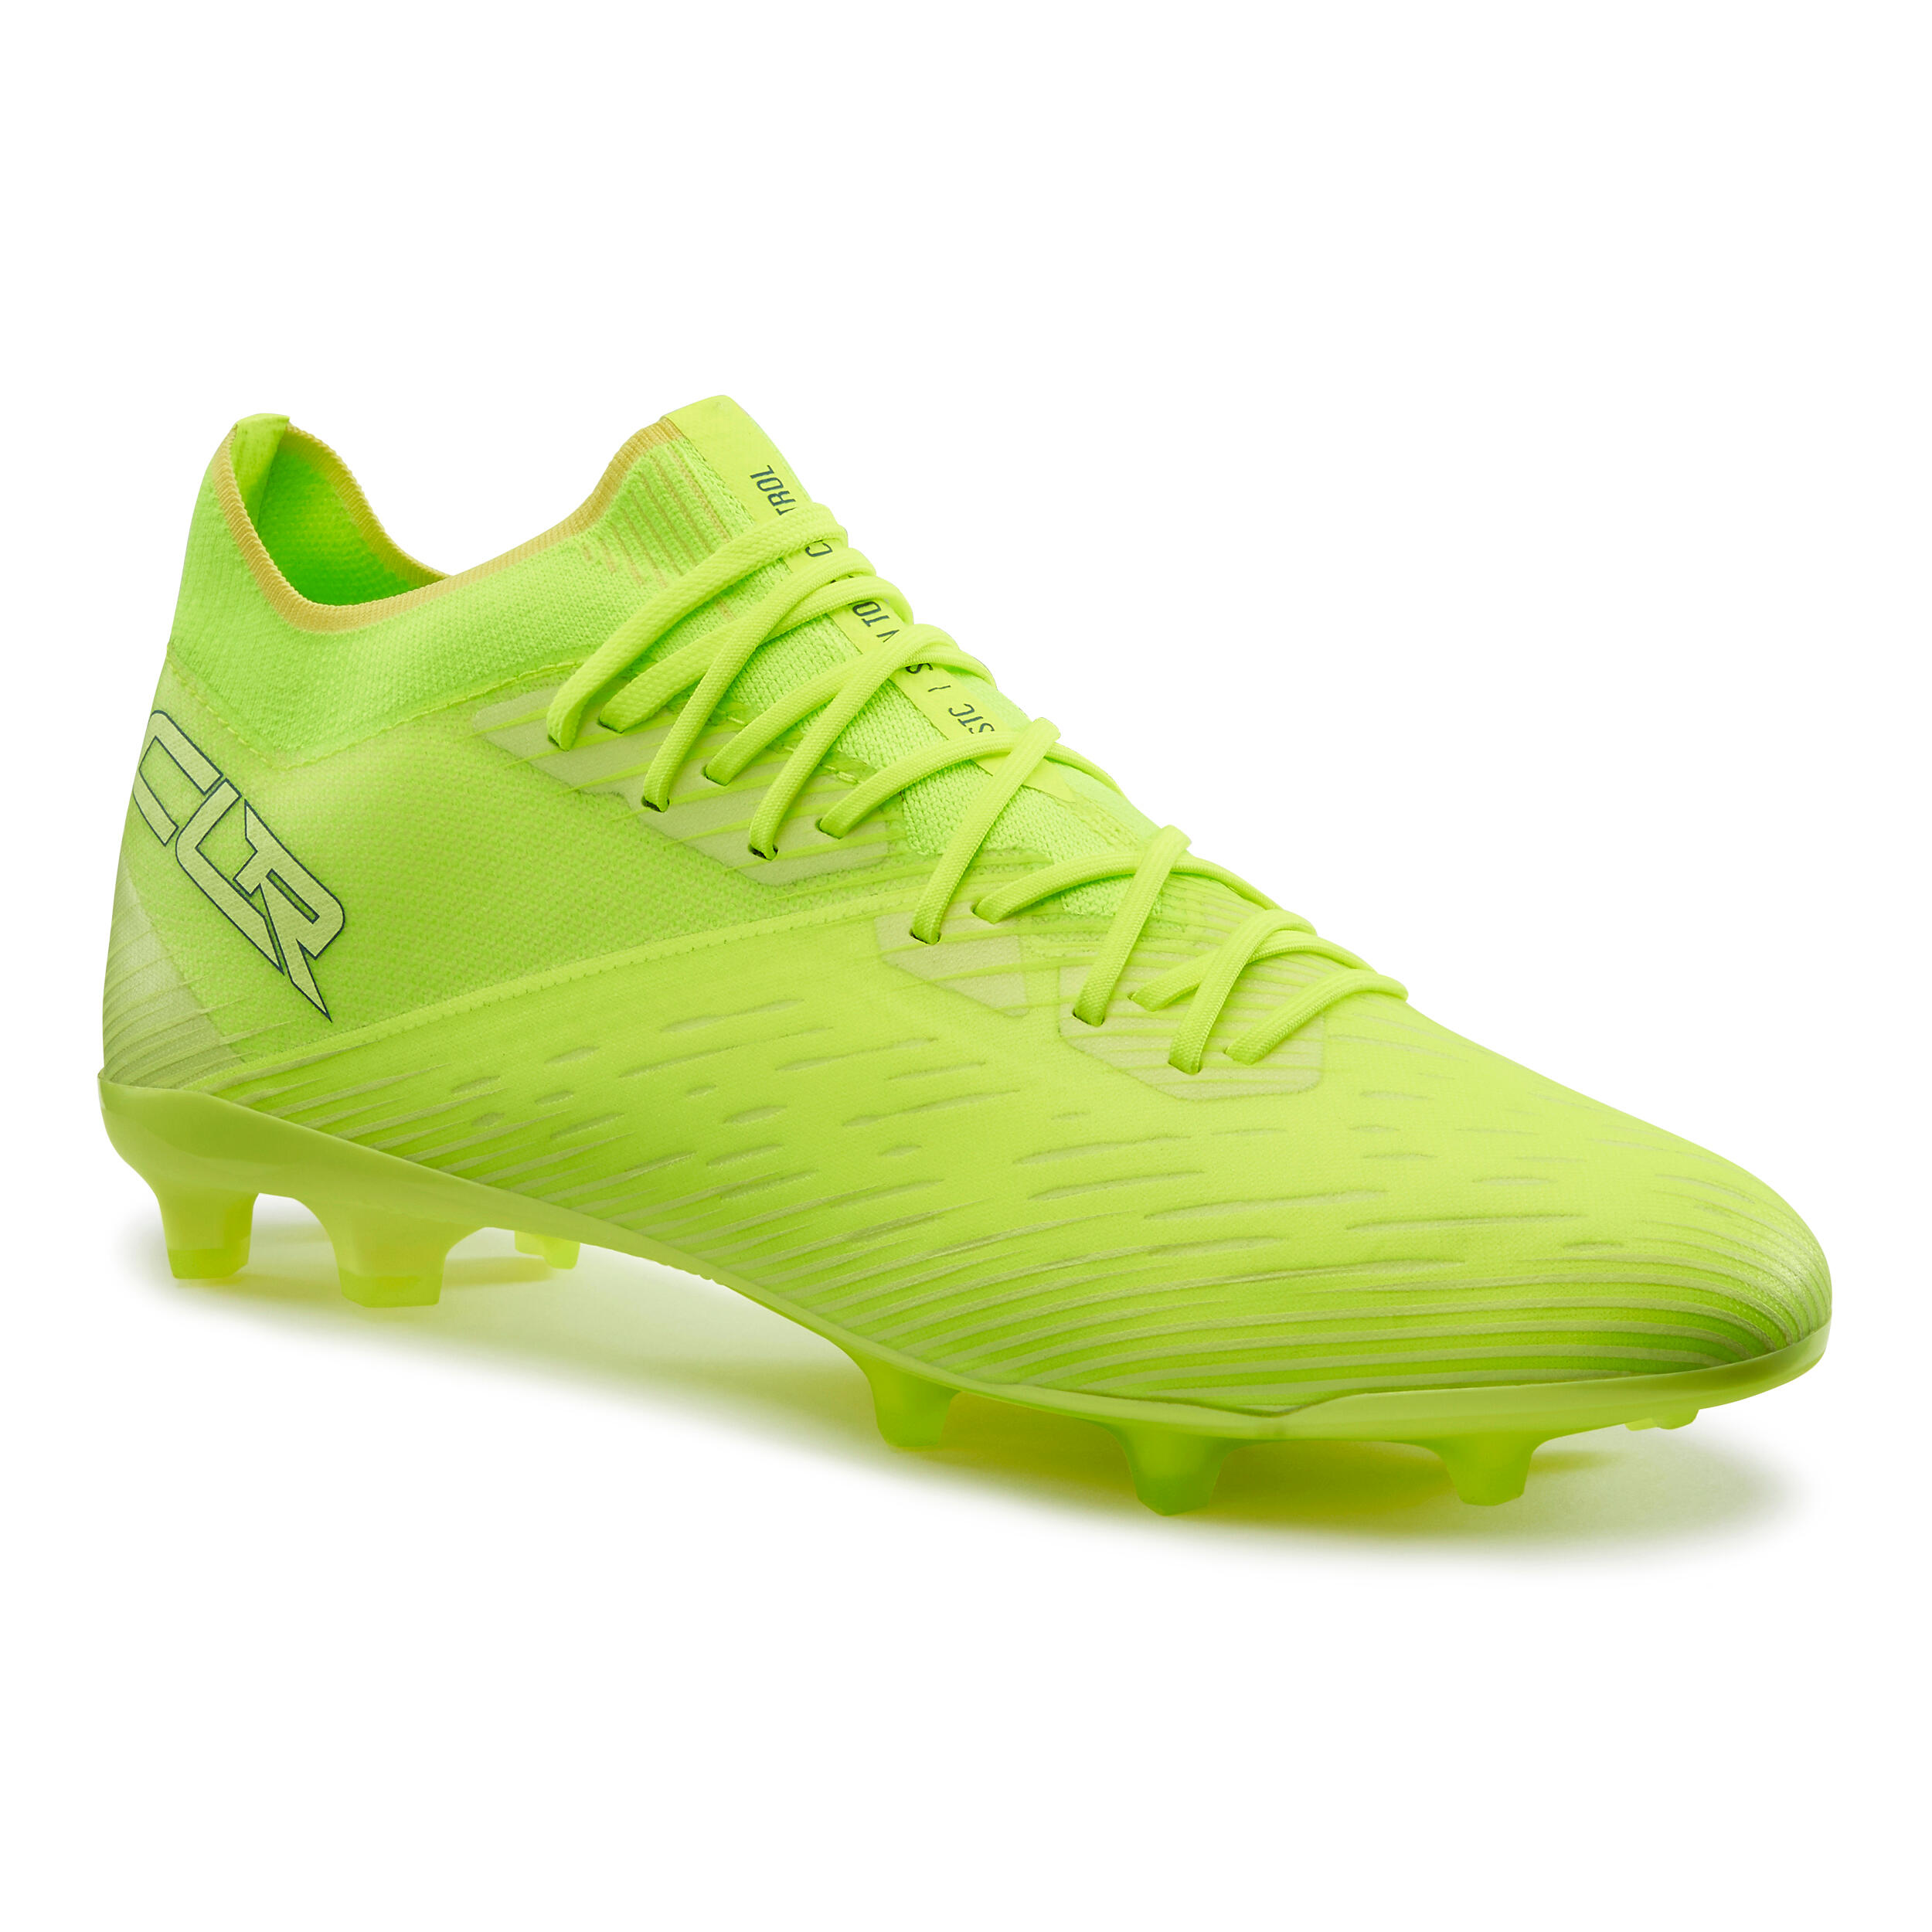 Mens Football Shoes CLR900 FG Grass Lightweight - Neon Yellow